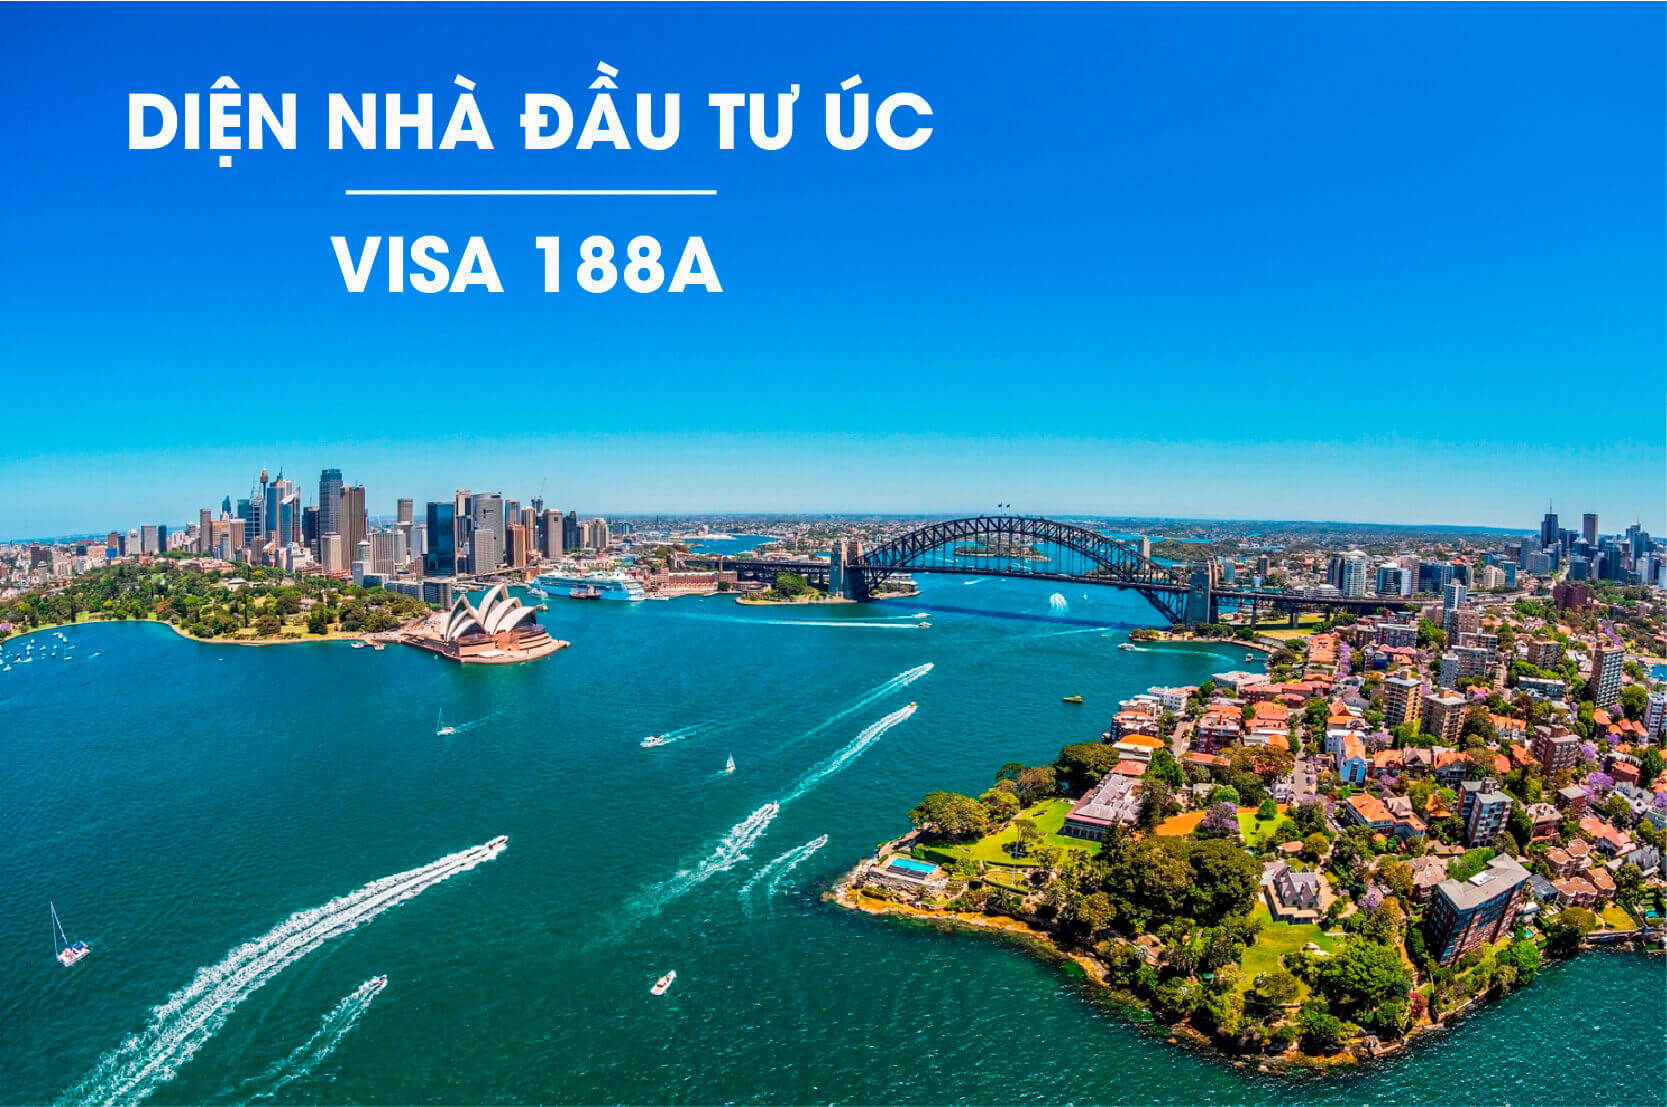 Chương Trình Đầu Tư Định Cư Visa 188a Úc